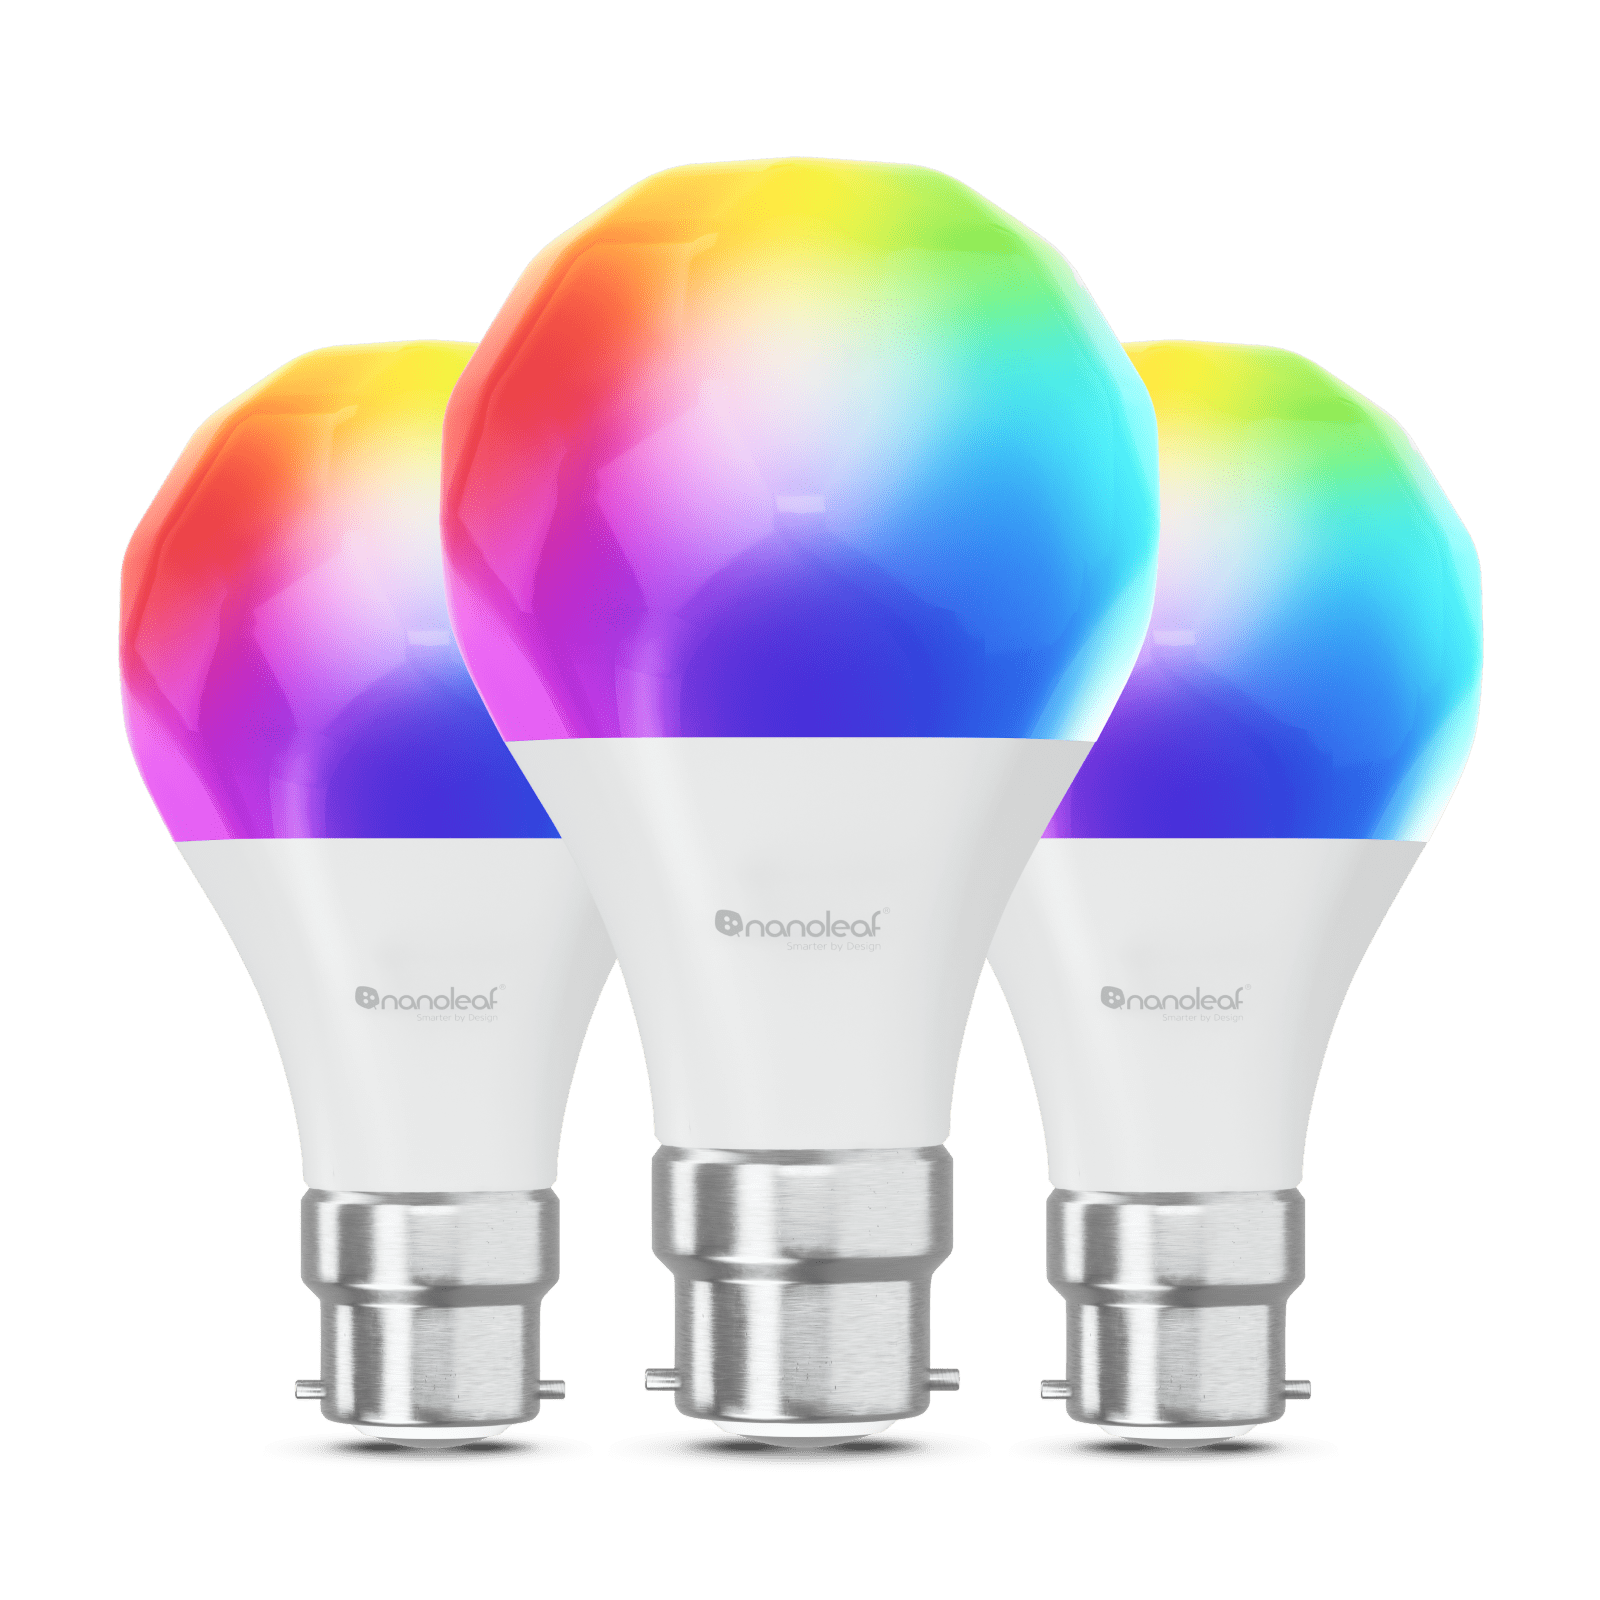 Nanoleaf Essentials Matter B22 Smart Bulbs